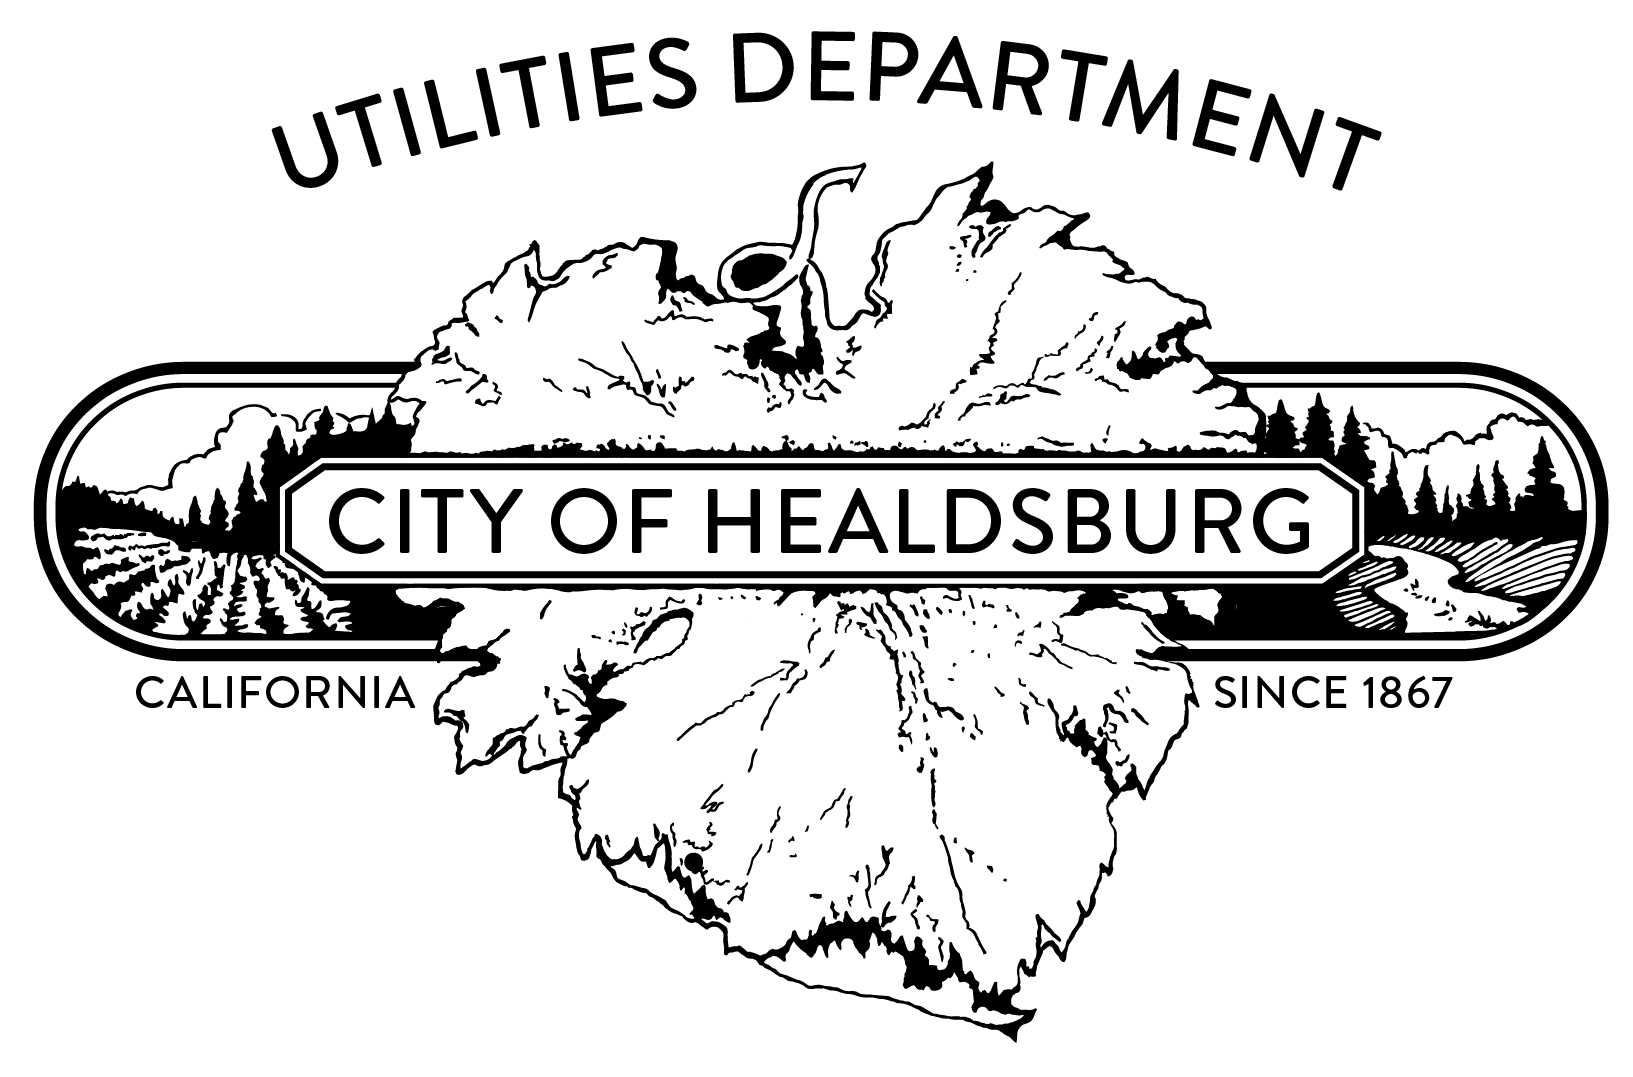 City of Healdsburg Utilities Department logo